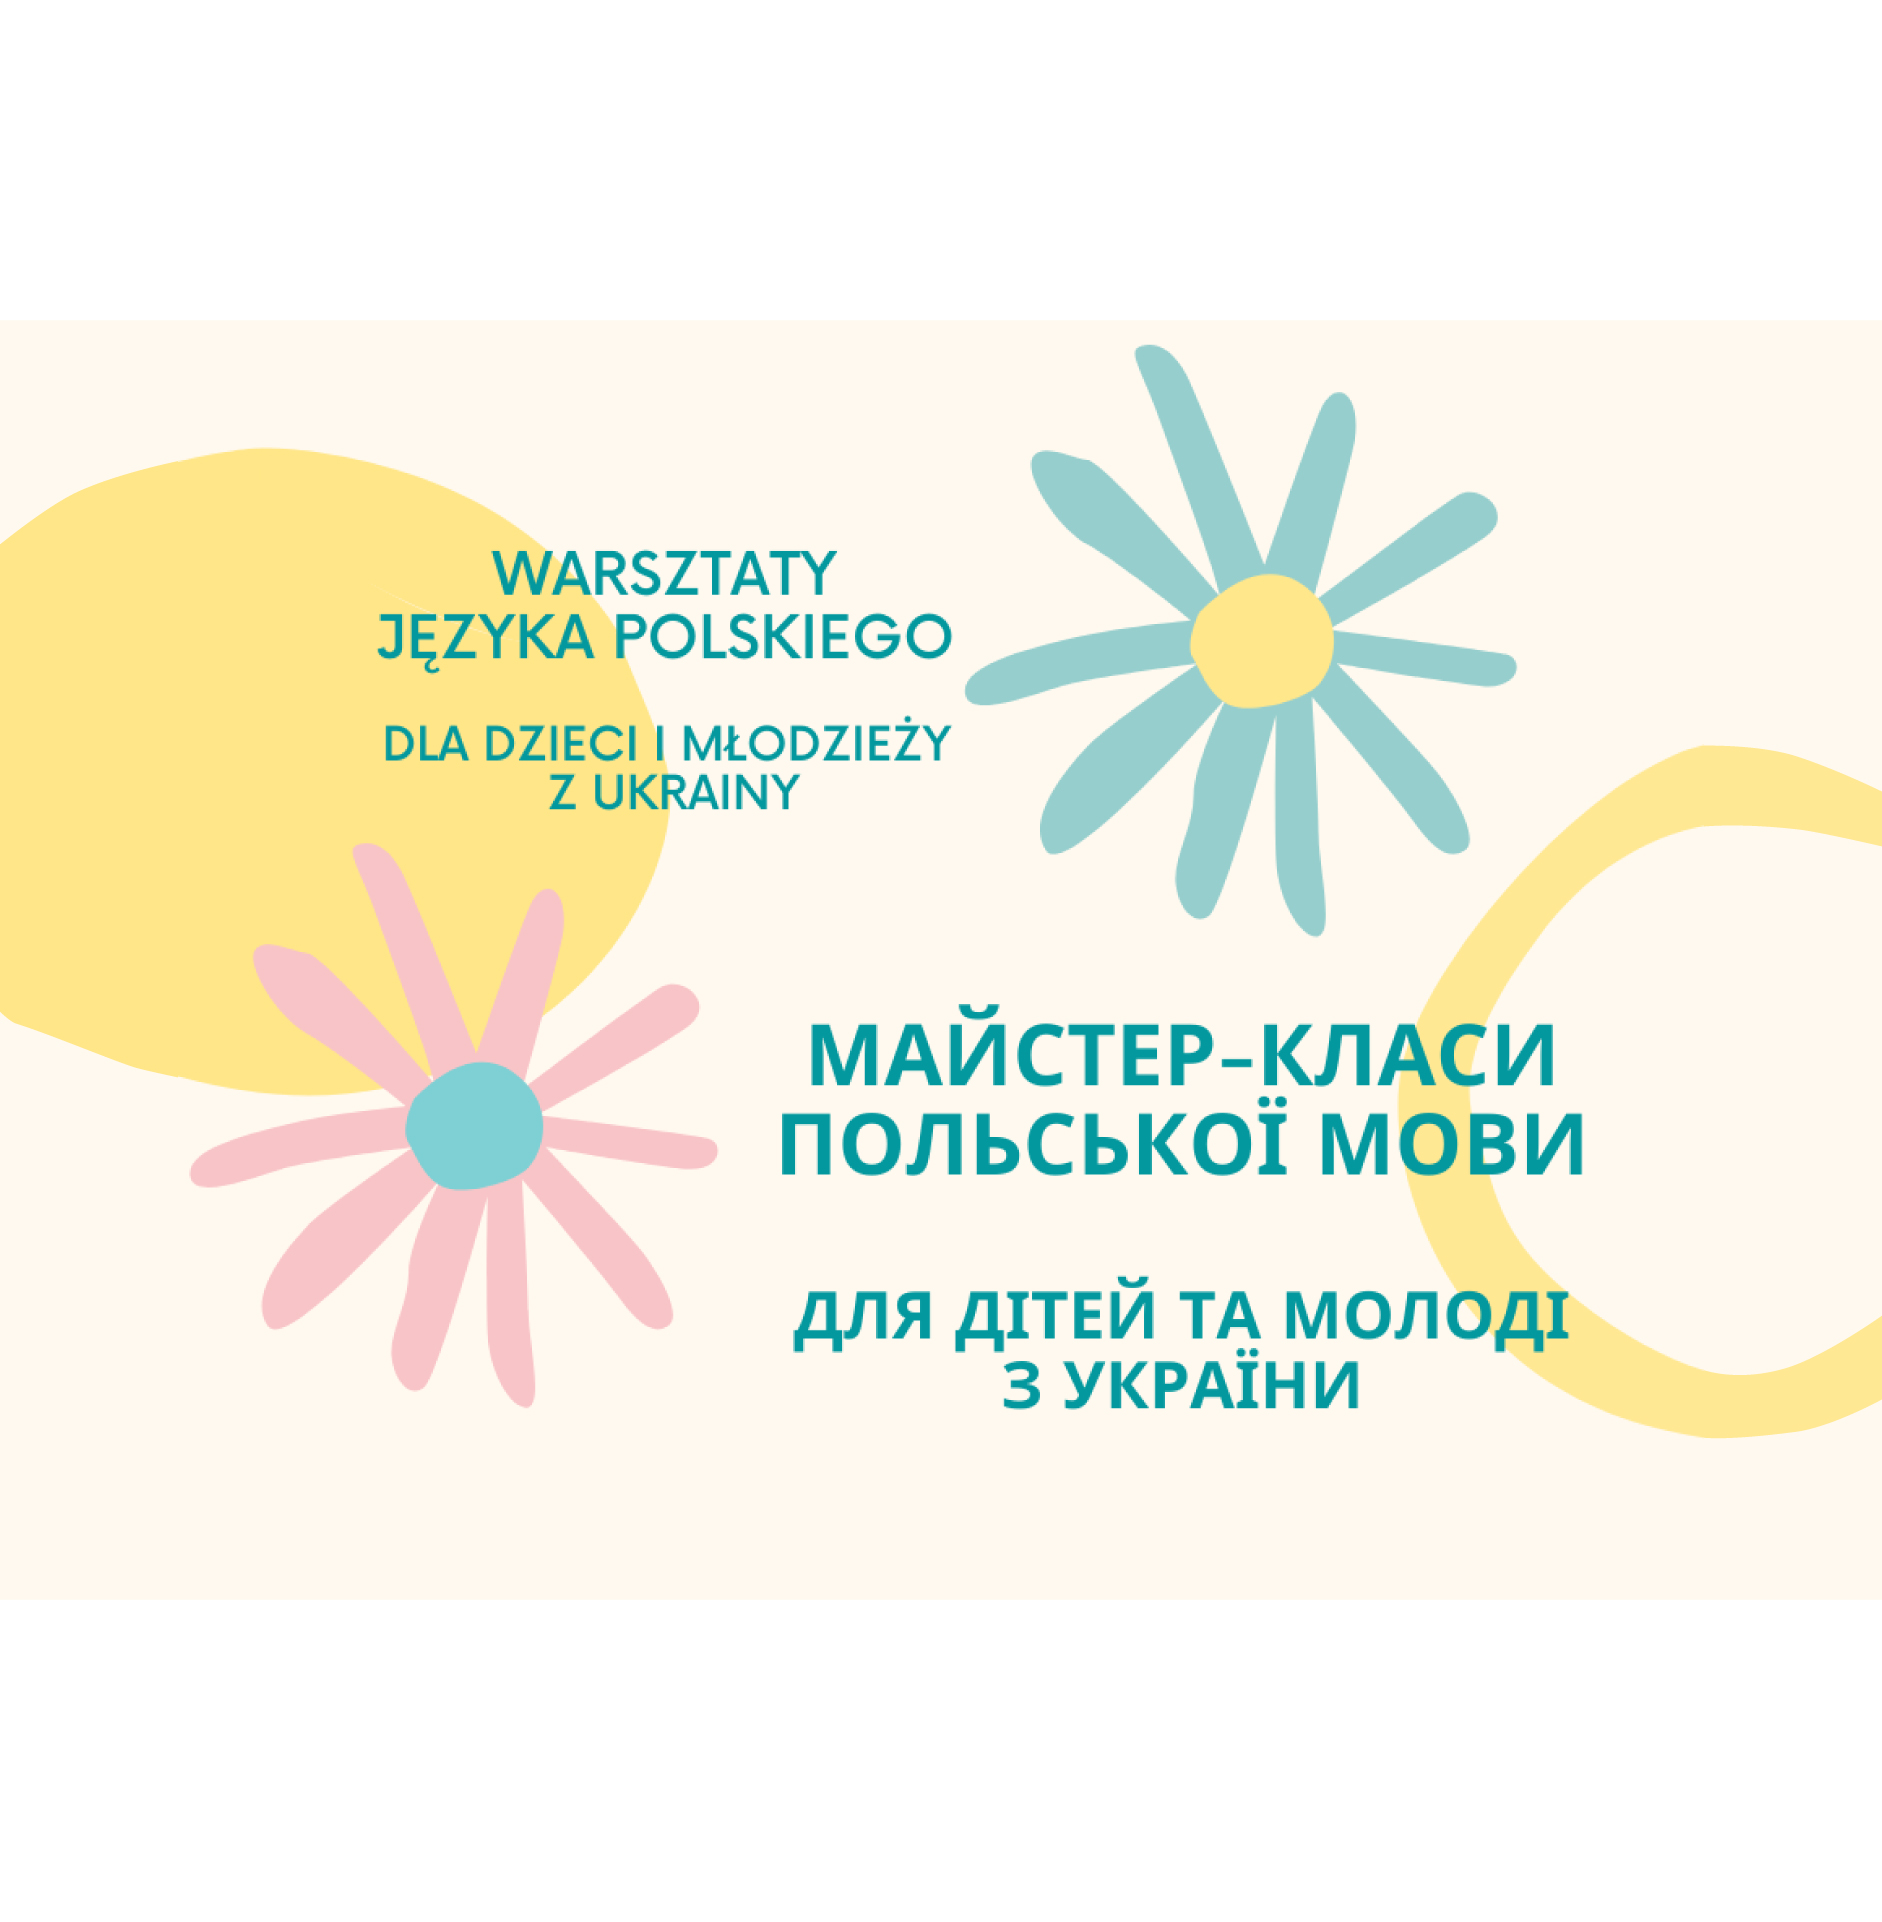 Warsztaty języka polskiego dla dzieci i młodzieży z Ukrainy